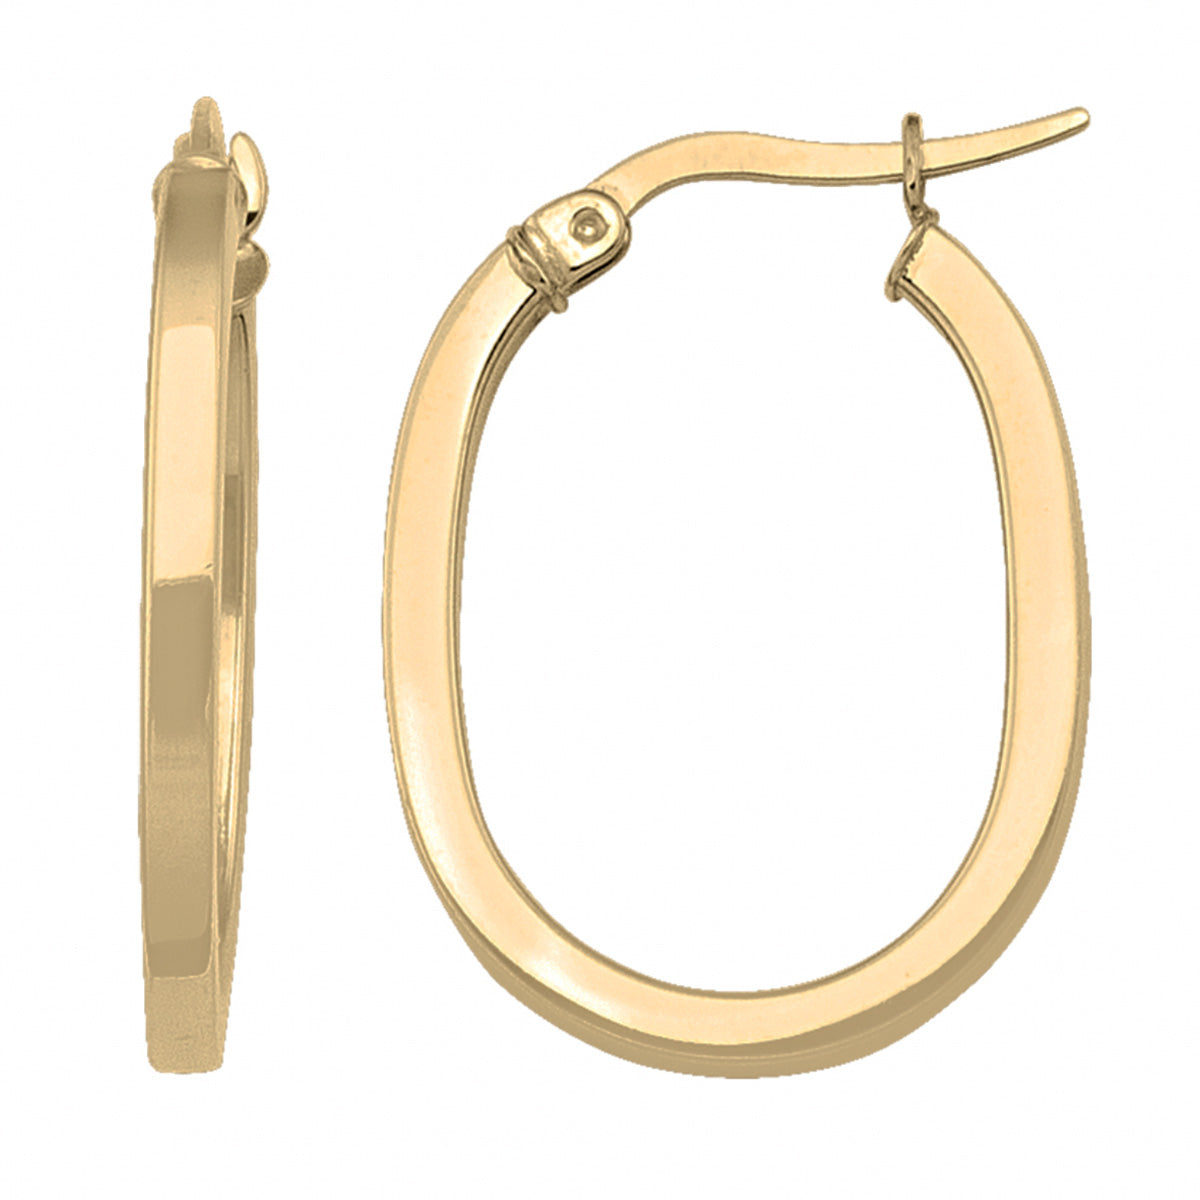 EH0407,  Gold Earrings, Hoops, 2.1 mm Tubing